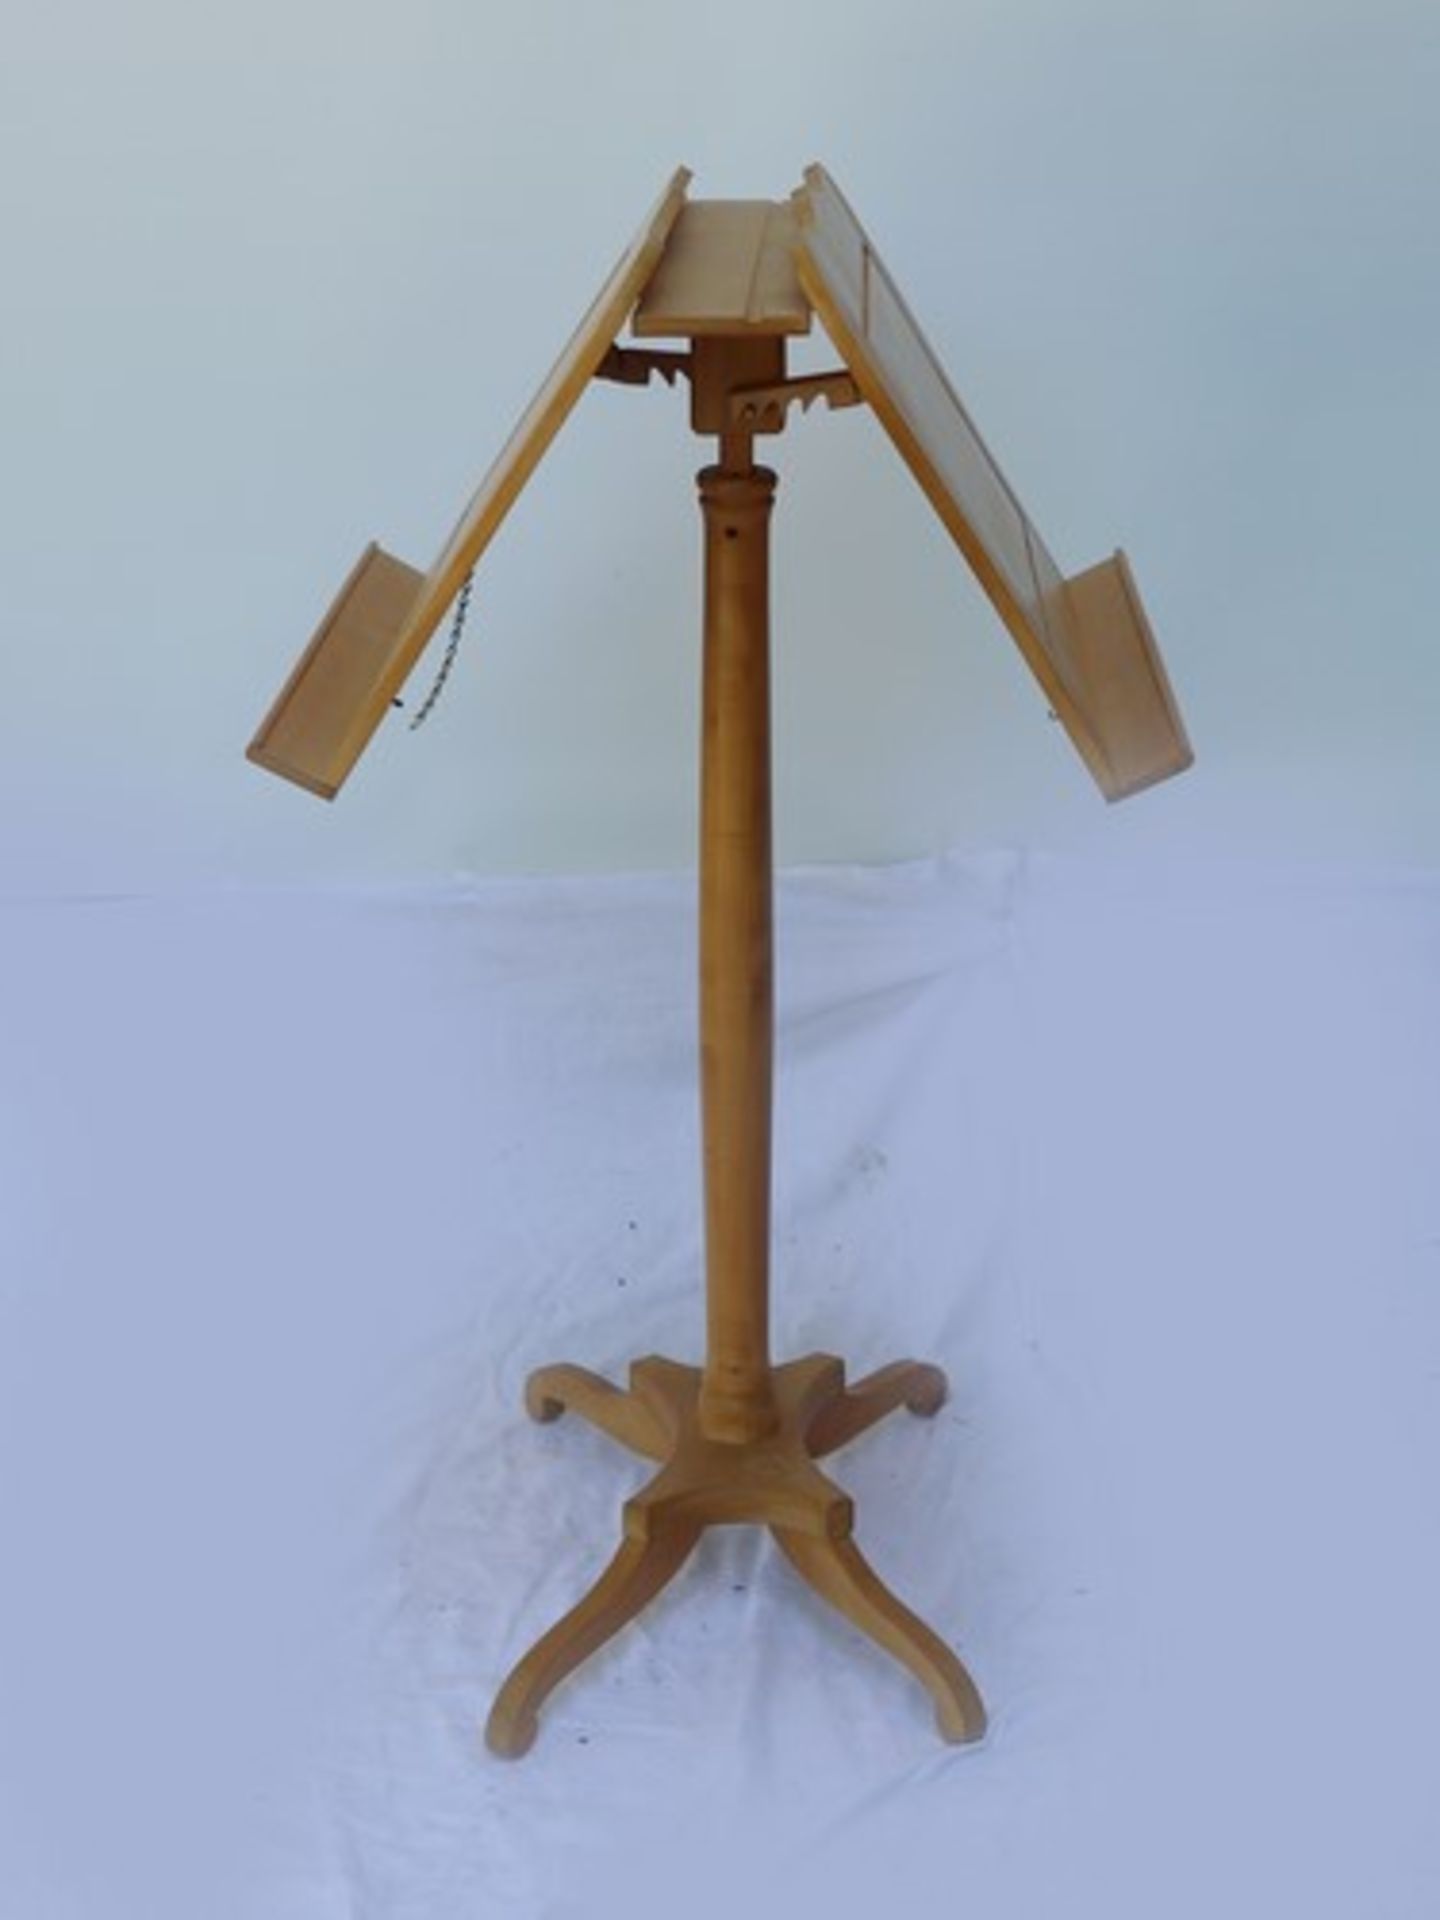 Notenständerhelles Holz, 4füßiger Stand, runder Schaft, zwei gegenüberliegende ausklappbare - Bild 4 aus 5